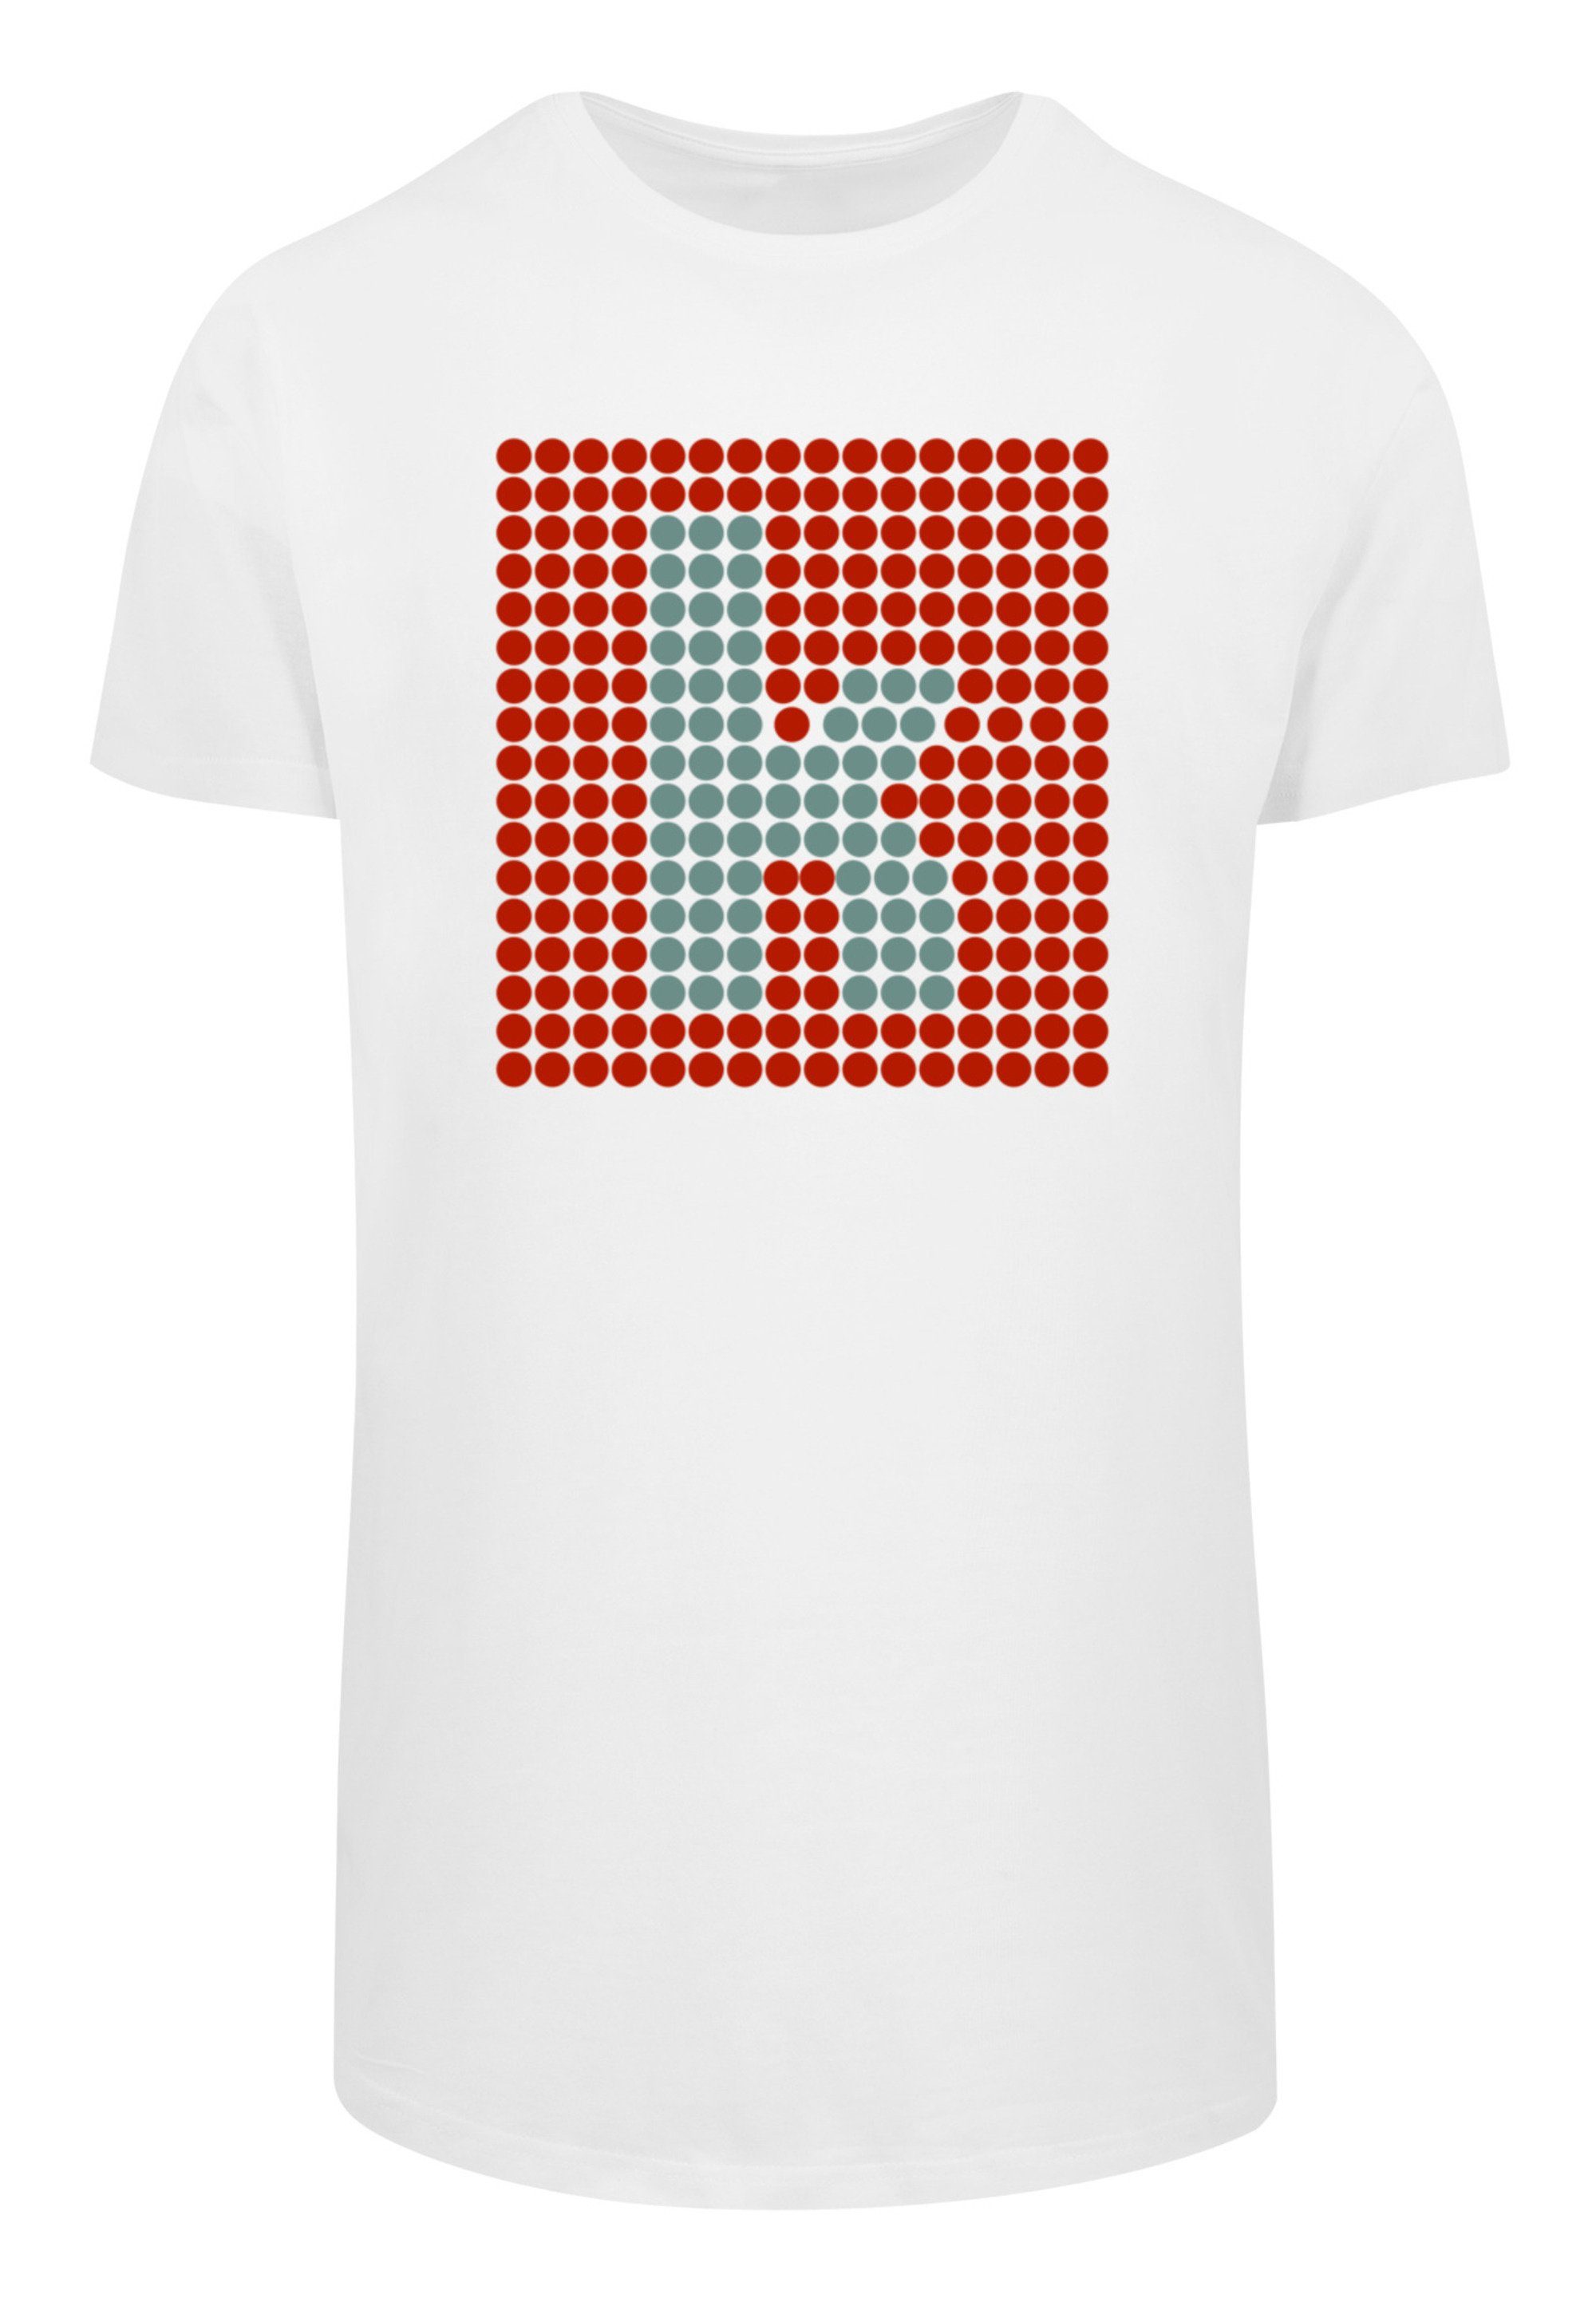 F4NT4STIC T-Shirt Band Glow weiß Black Killers The K Print Rock